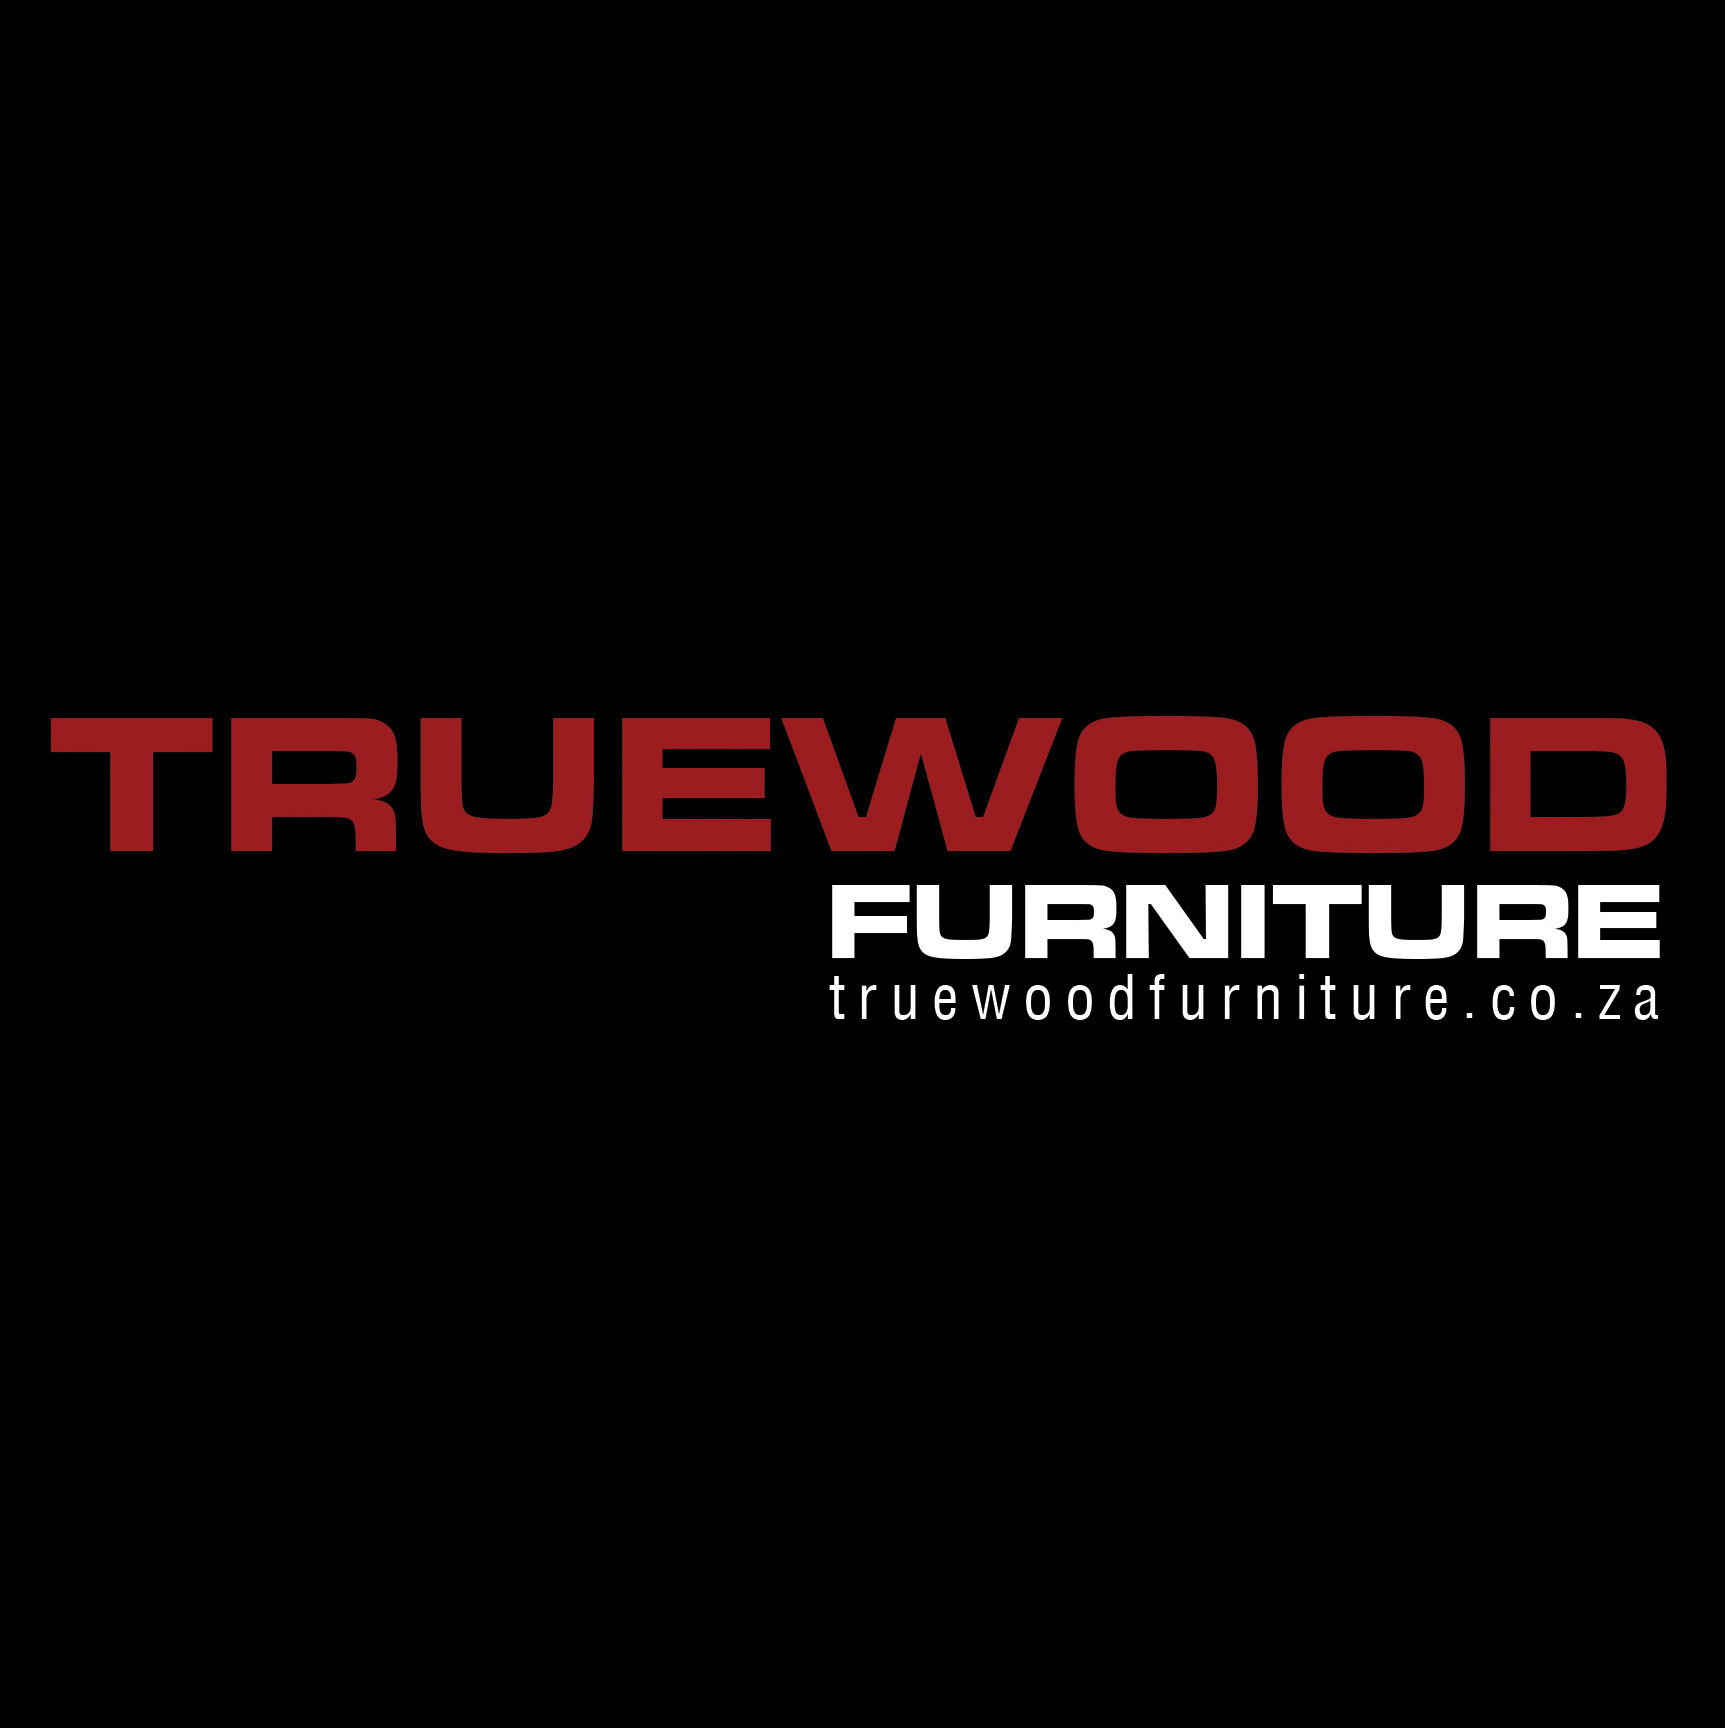 Truewood Furniture